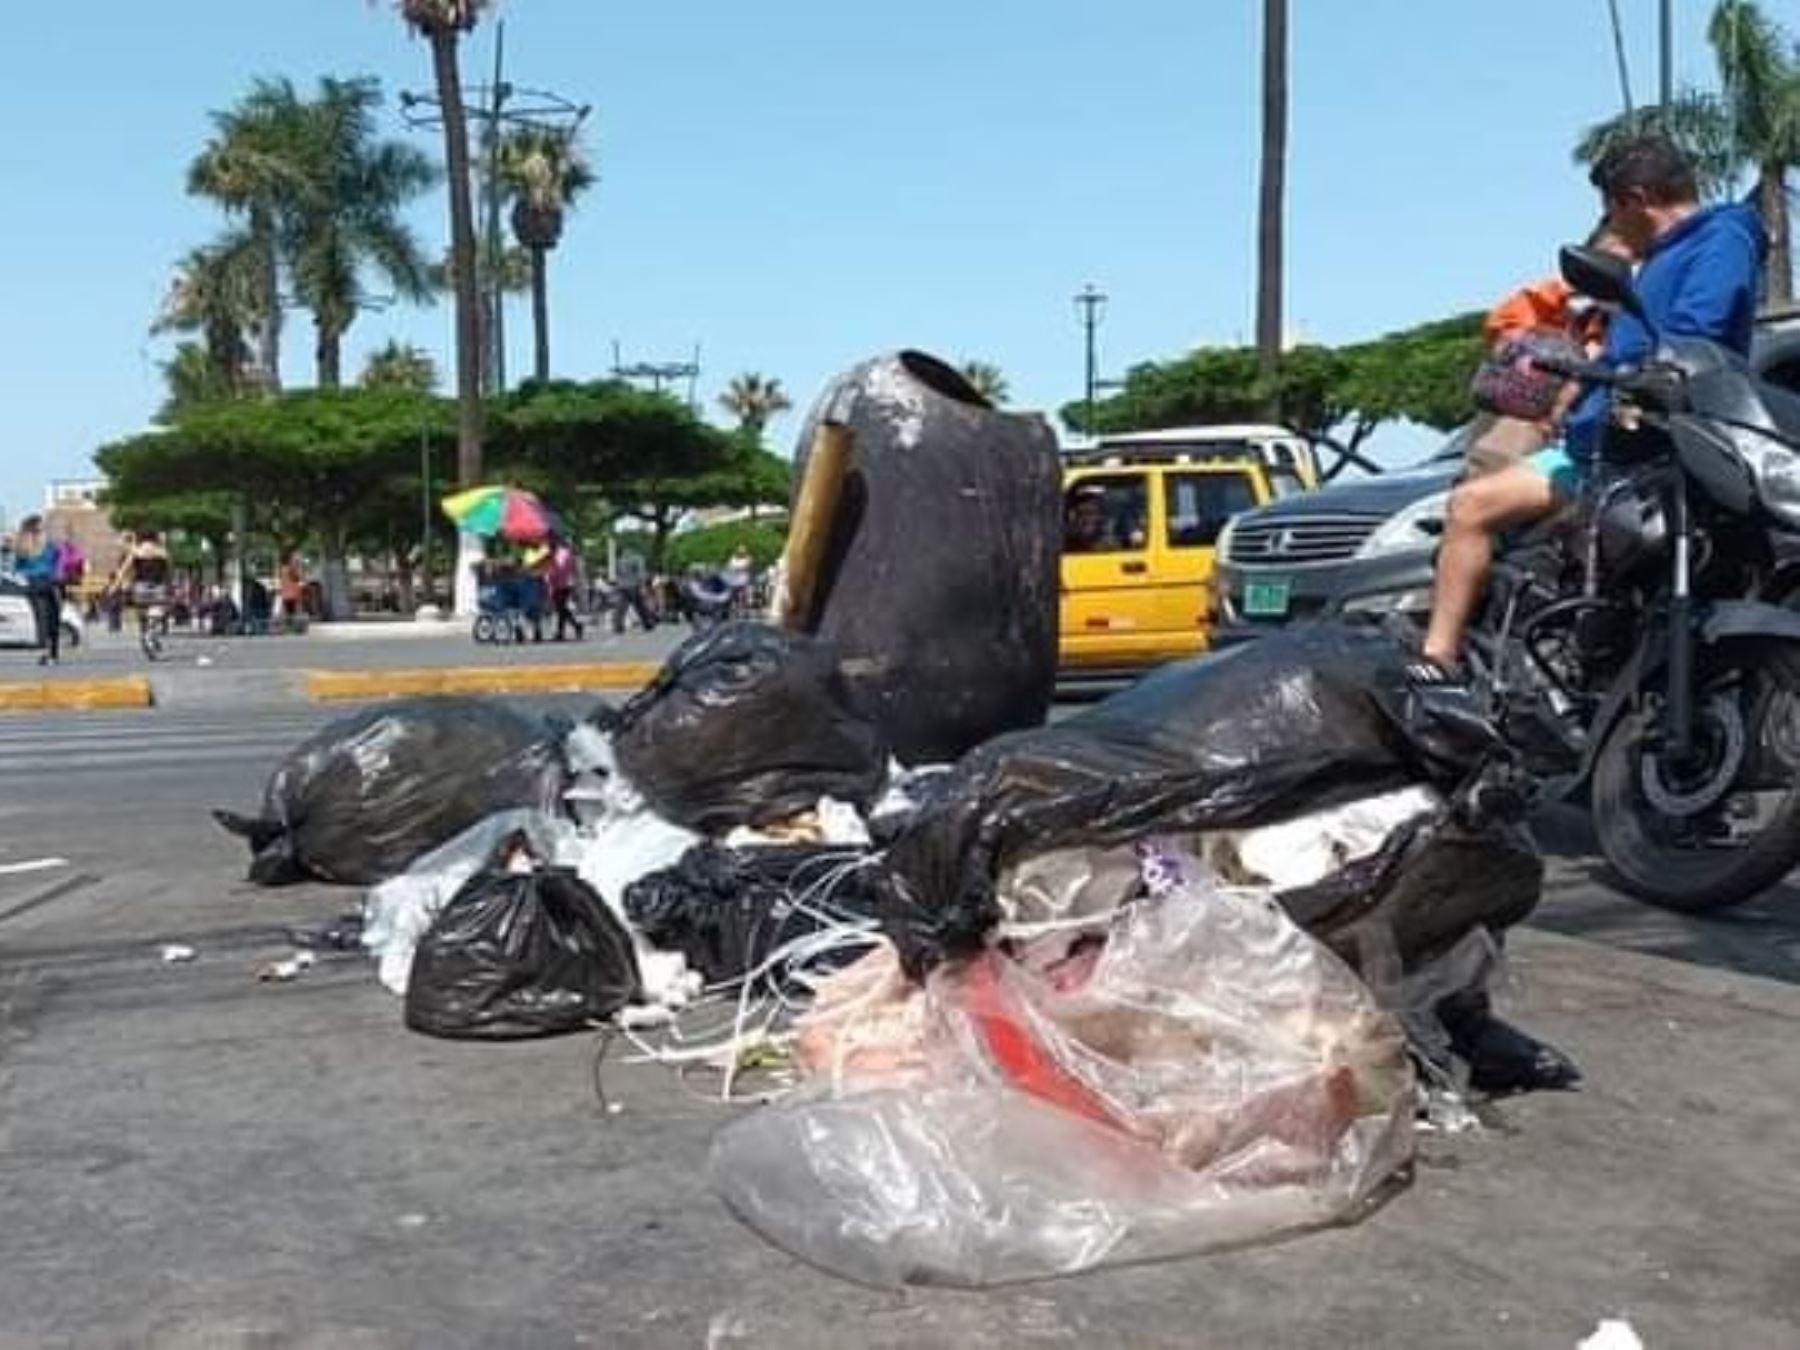 La ciudad de Chimbote es afectada por huelga de trabajadores municipales y sus calles lucen descuidadas y basura acumulada. Foto: ANDINA/difusión.